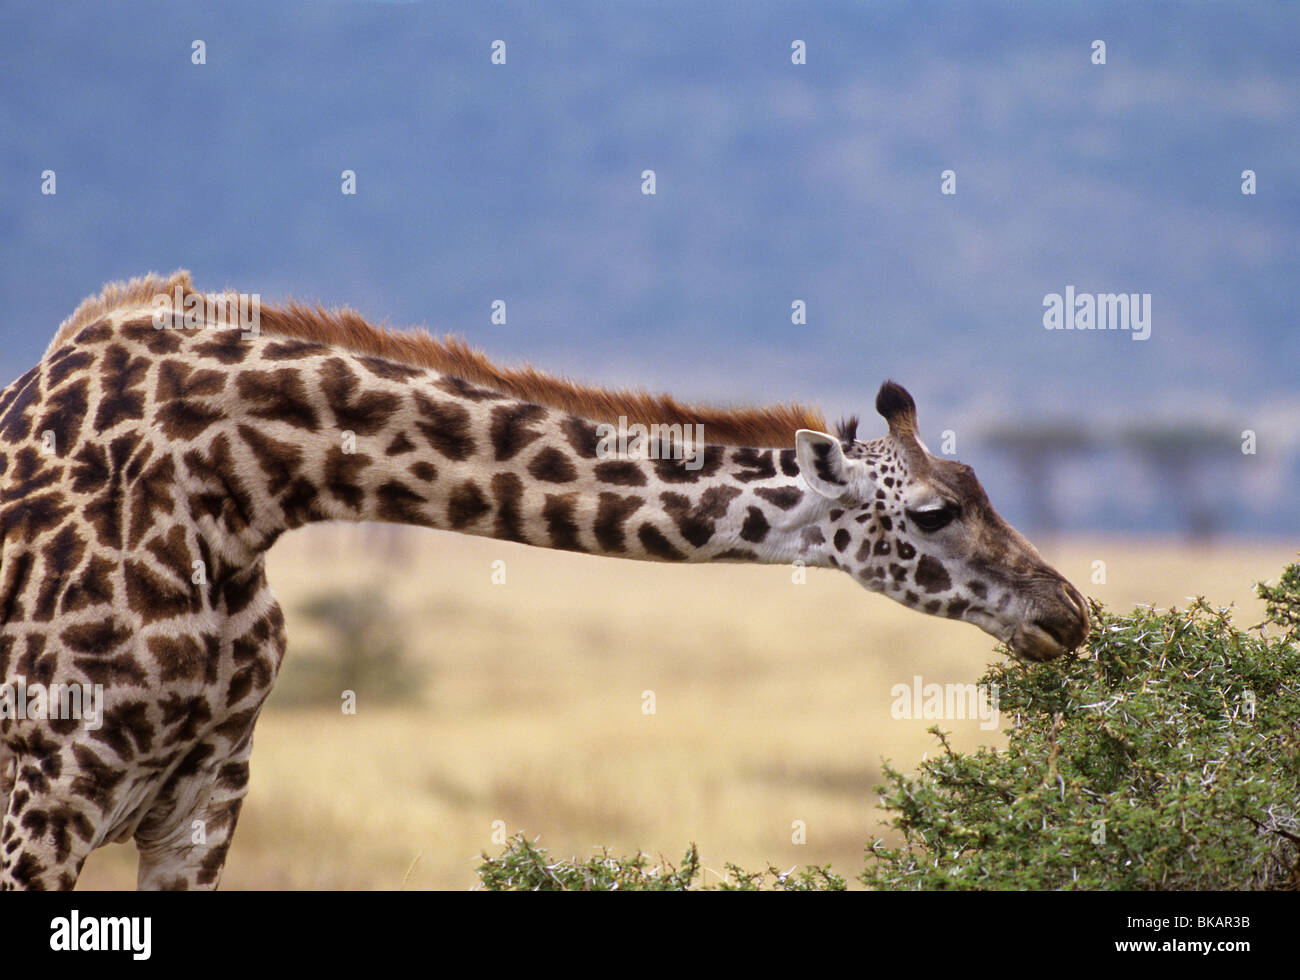 La giraffa, Giraffa camelopardalis, utilizza un collo lungo per navigare su una spinosa boccola di acacia Foto Stock